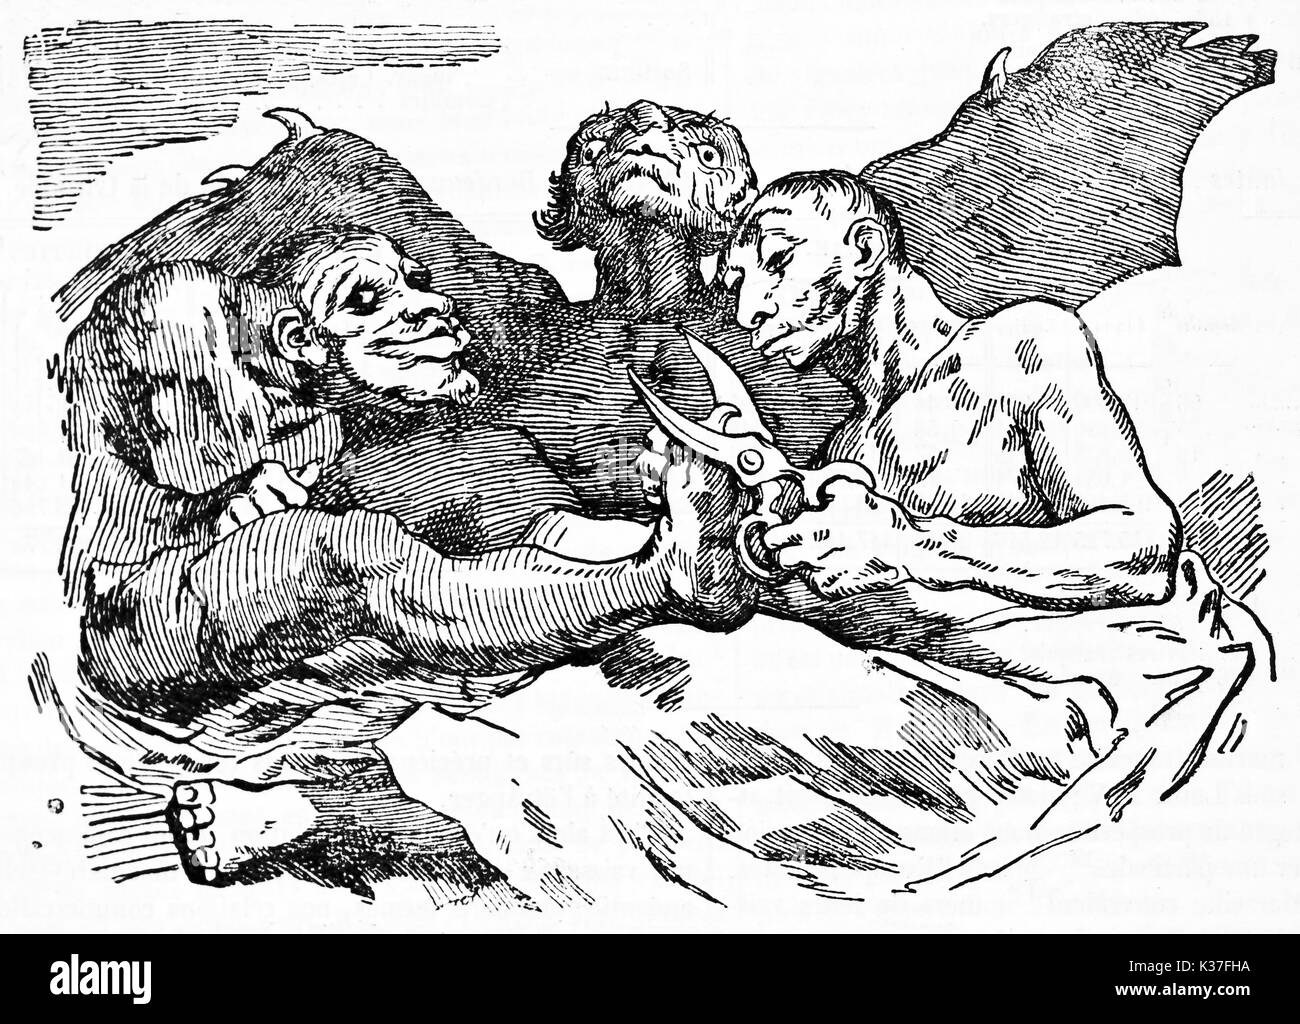 Teufel Schneiden der Nägel, der antiken mittelalterlichen grotesken Kontext. Alte Karikatur von Francisco Goya auf Magasin Pittoresque Paris 1834 veröffentlicht. Stockfoto